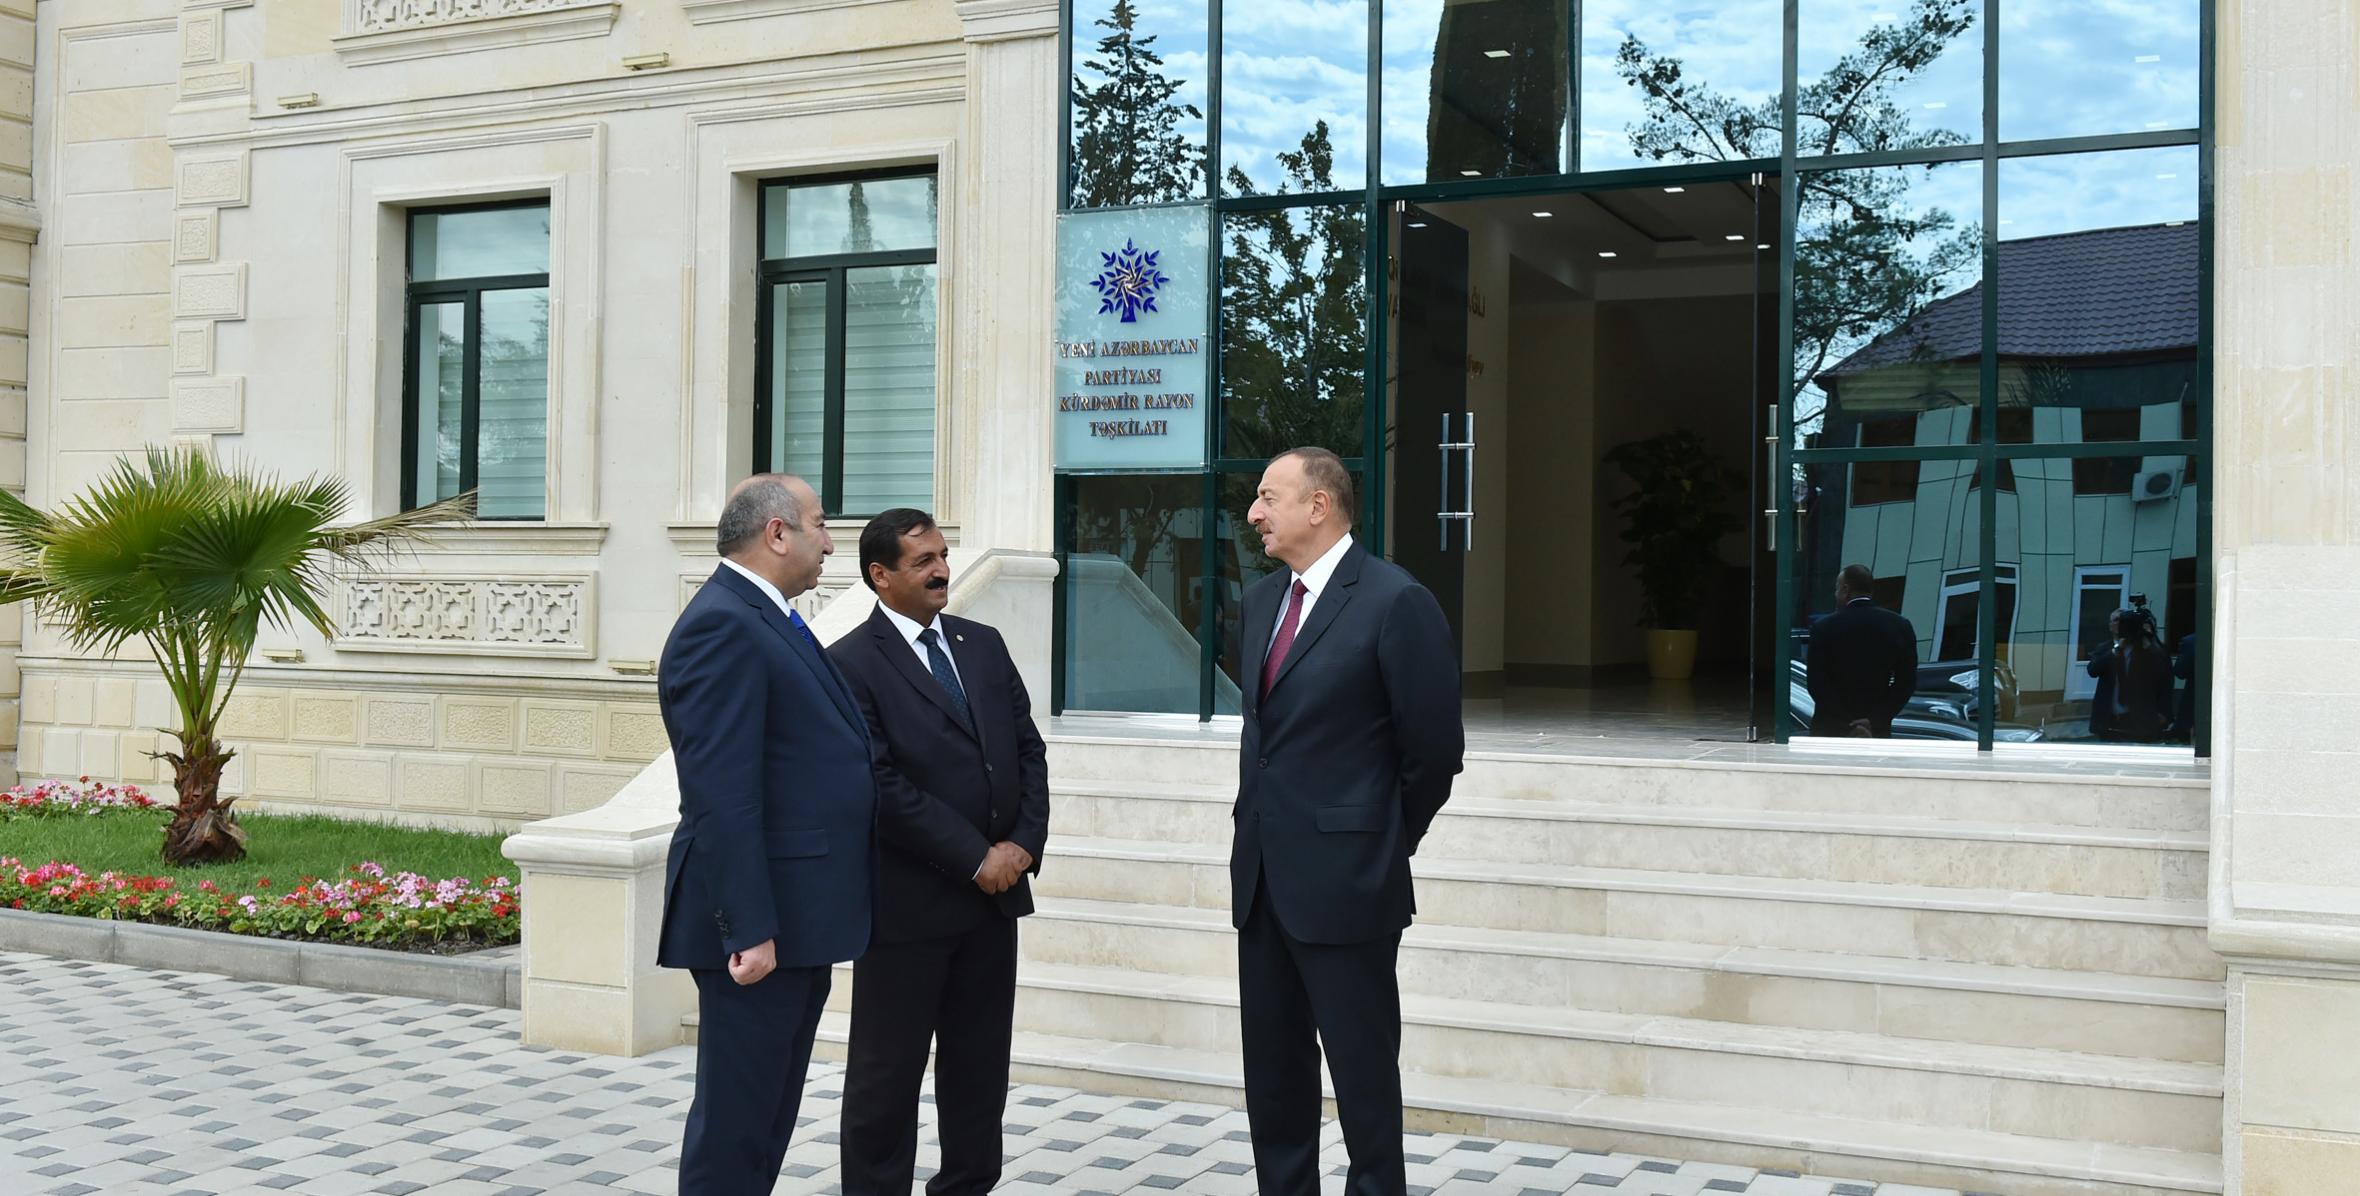 Ильхам Алиев принял участие в открытии административного здания Кюрдамирской районной организации Партии «Ени Азербайджан»